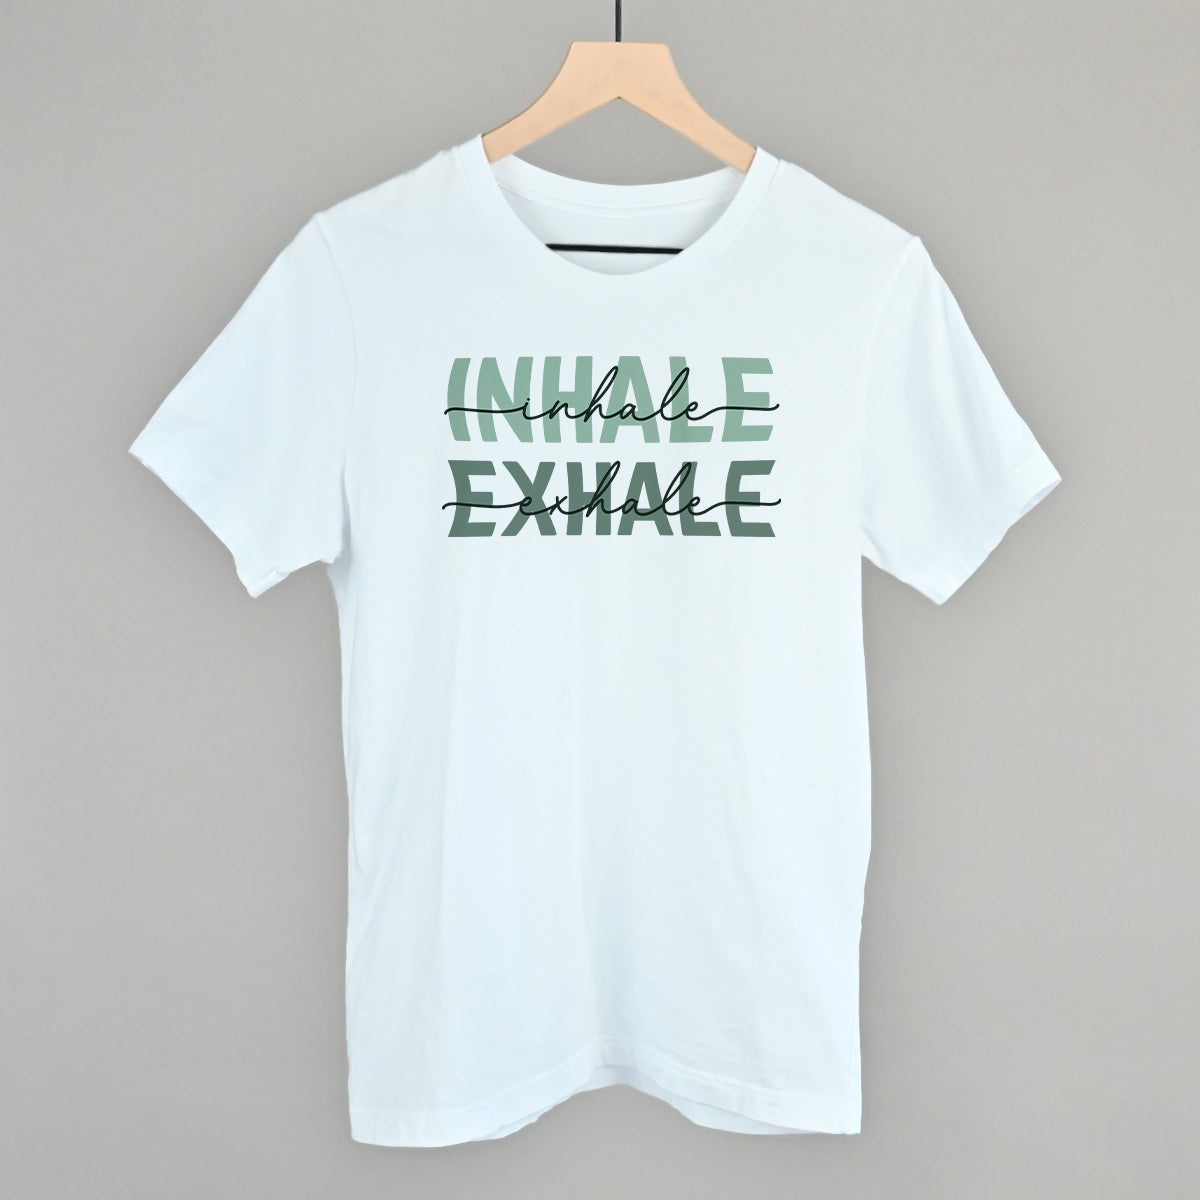 Inhale Exhale (Green)